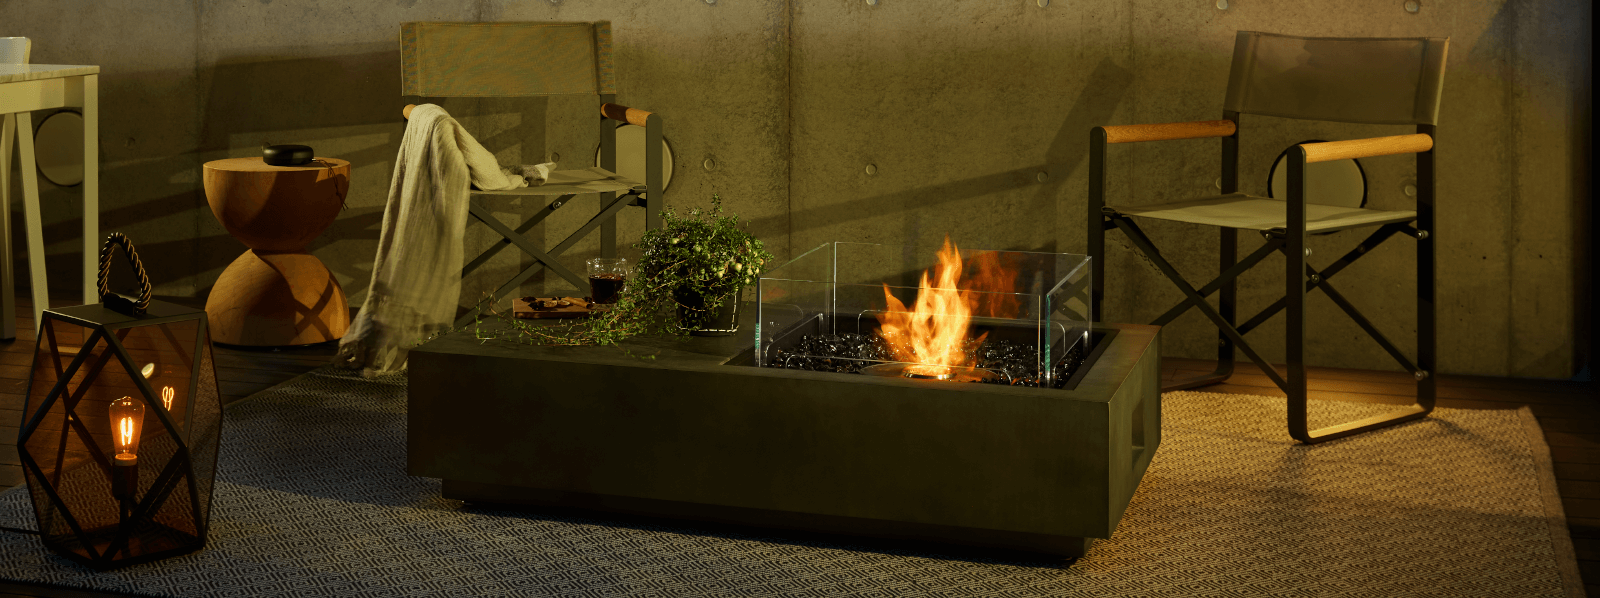 バイオエタノール暖炉「EcoSmart Fire」製品のmanhattan50の画像。暖炉と違って工事が不要なため、自由な場所に配置できています。